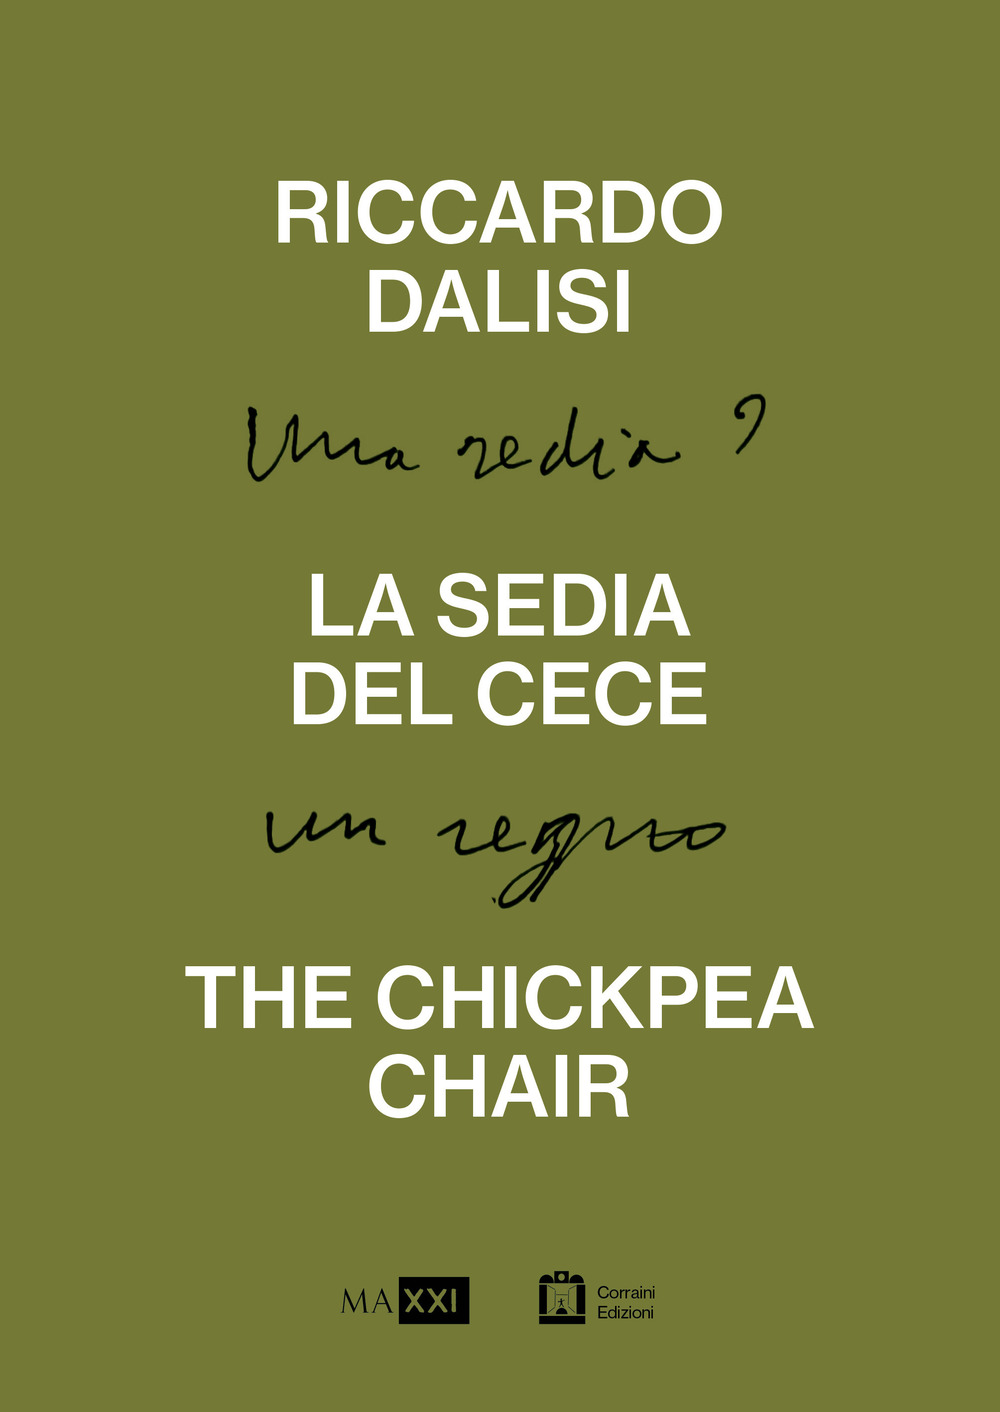 Riccardo Dalisi. La sedia del cece. Una sedia? Un regno